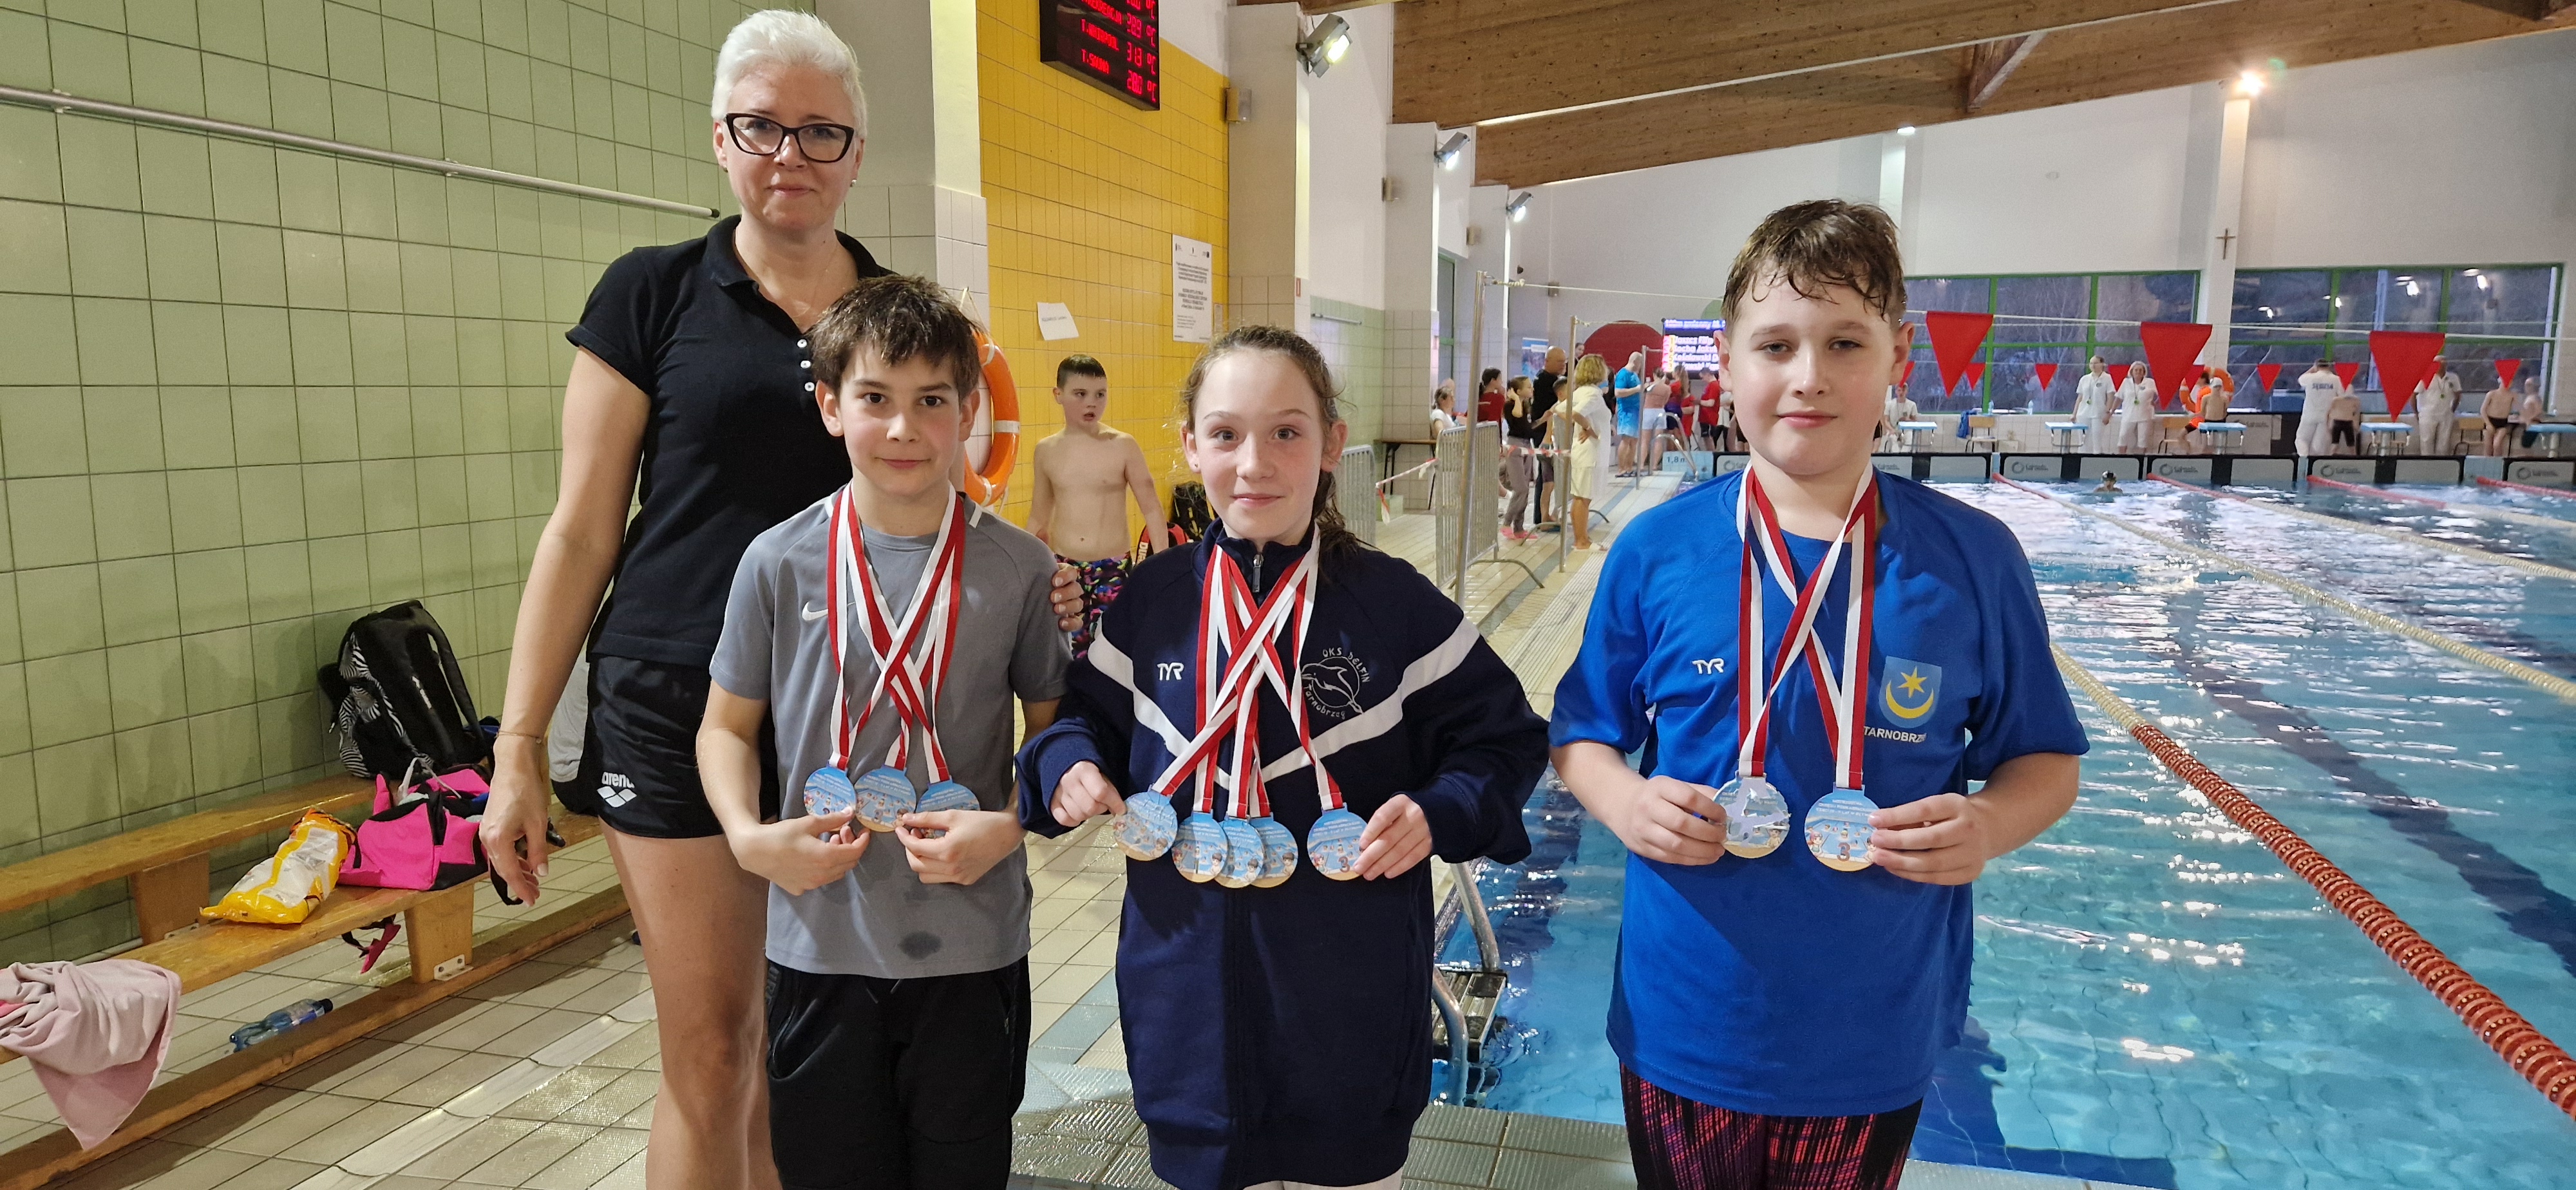 Mistrzostwa Okręgu Podkarpackiego Dzieci 10-11 lat, 5 startów i 5 medali Blanki Krasowskiej